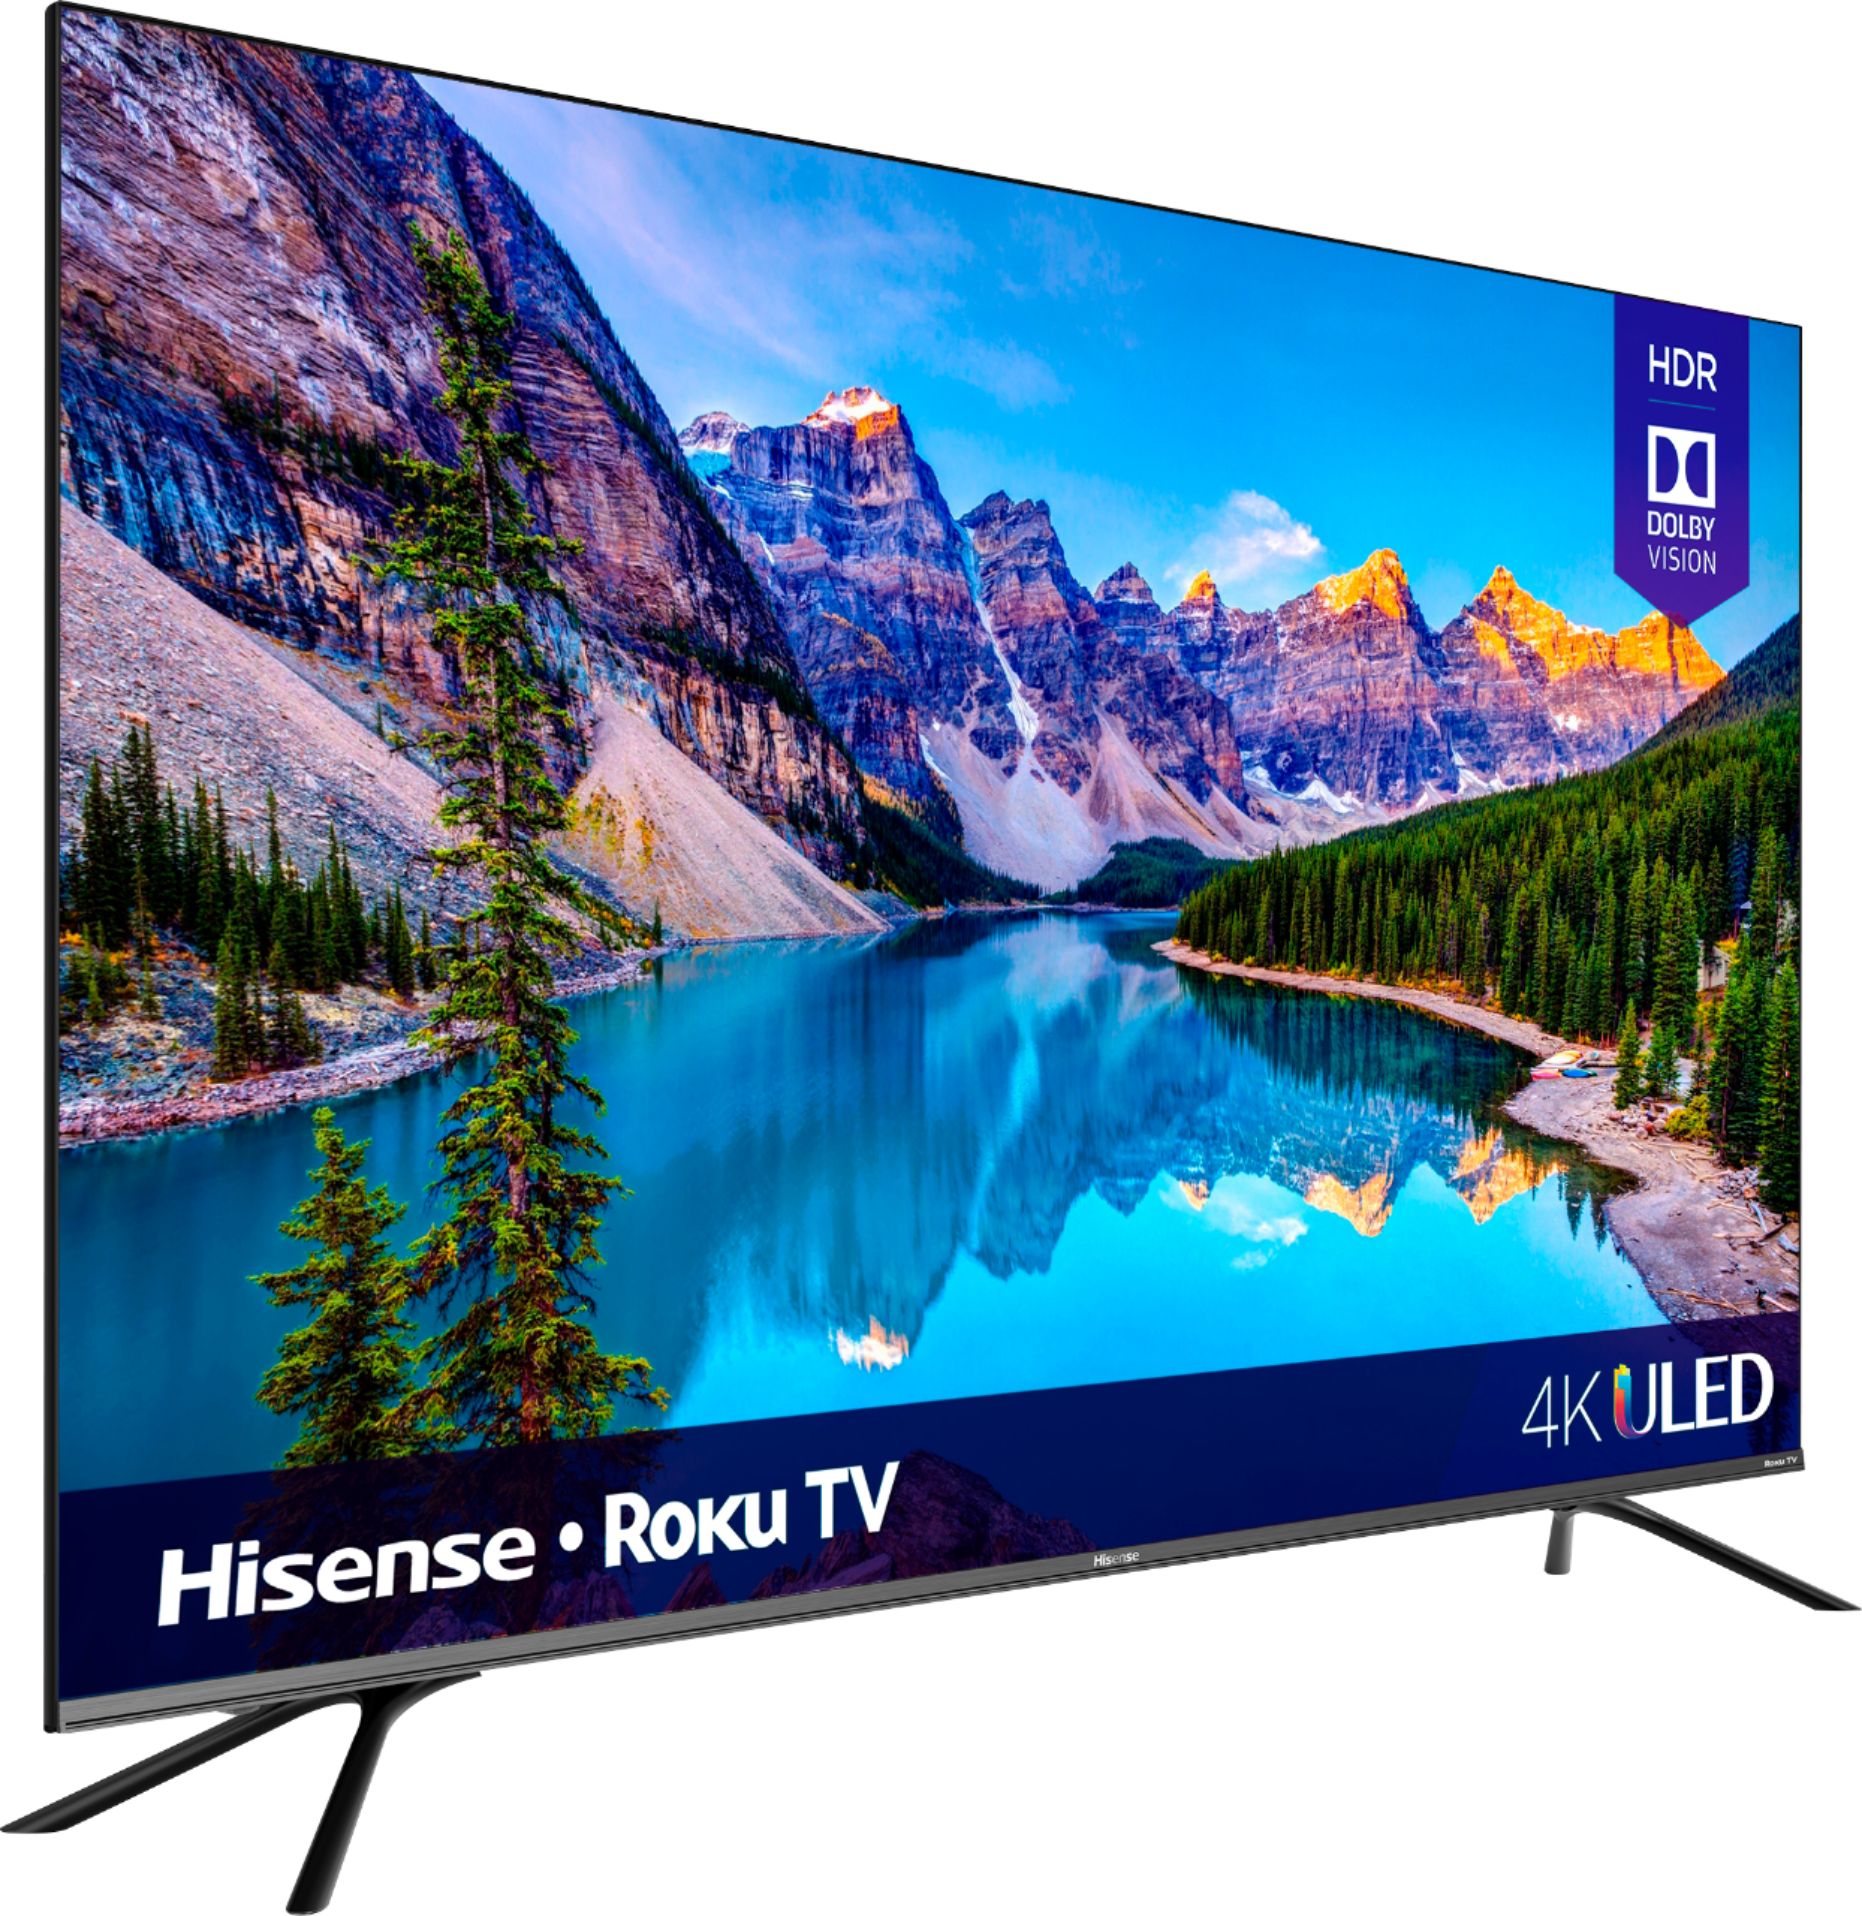 Hisense 65 Class 4K UHD LCD Roku Smart TV HDR R6 Series 65R6E4 